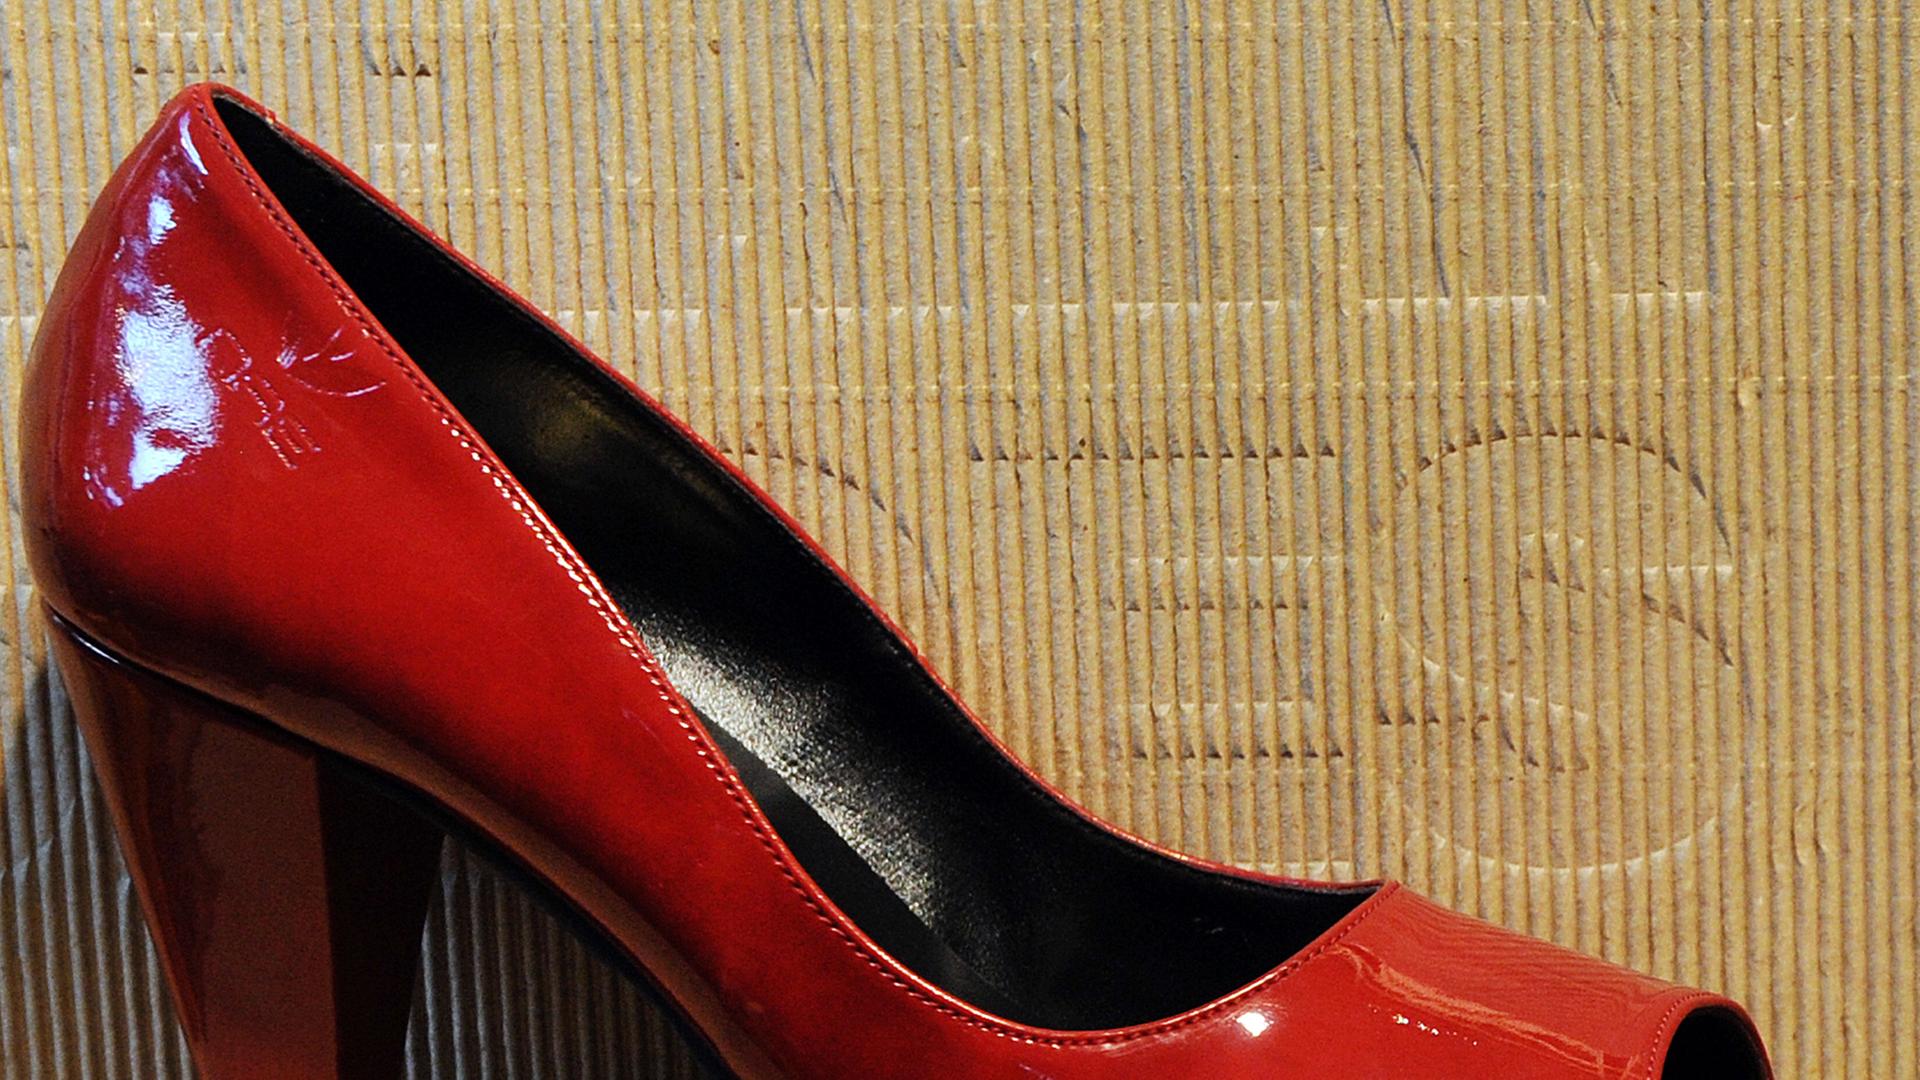 Rote vegane Schuhe stehen im veganen Schuhladen avesu in der Schivelbeiner Straße in Berlin Prenzlauer Berg, fotografiert am 23.08.2012. Verkauft werden hochwertige und schöne vegane Schuhe für Menschen, die Tierleid vermeiden möchten. Zum Einsatz kommen Lederersatzstoffe, die aus umweltverträglicher und fairer Herstellung stammen.